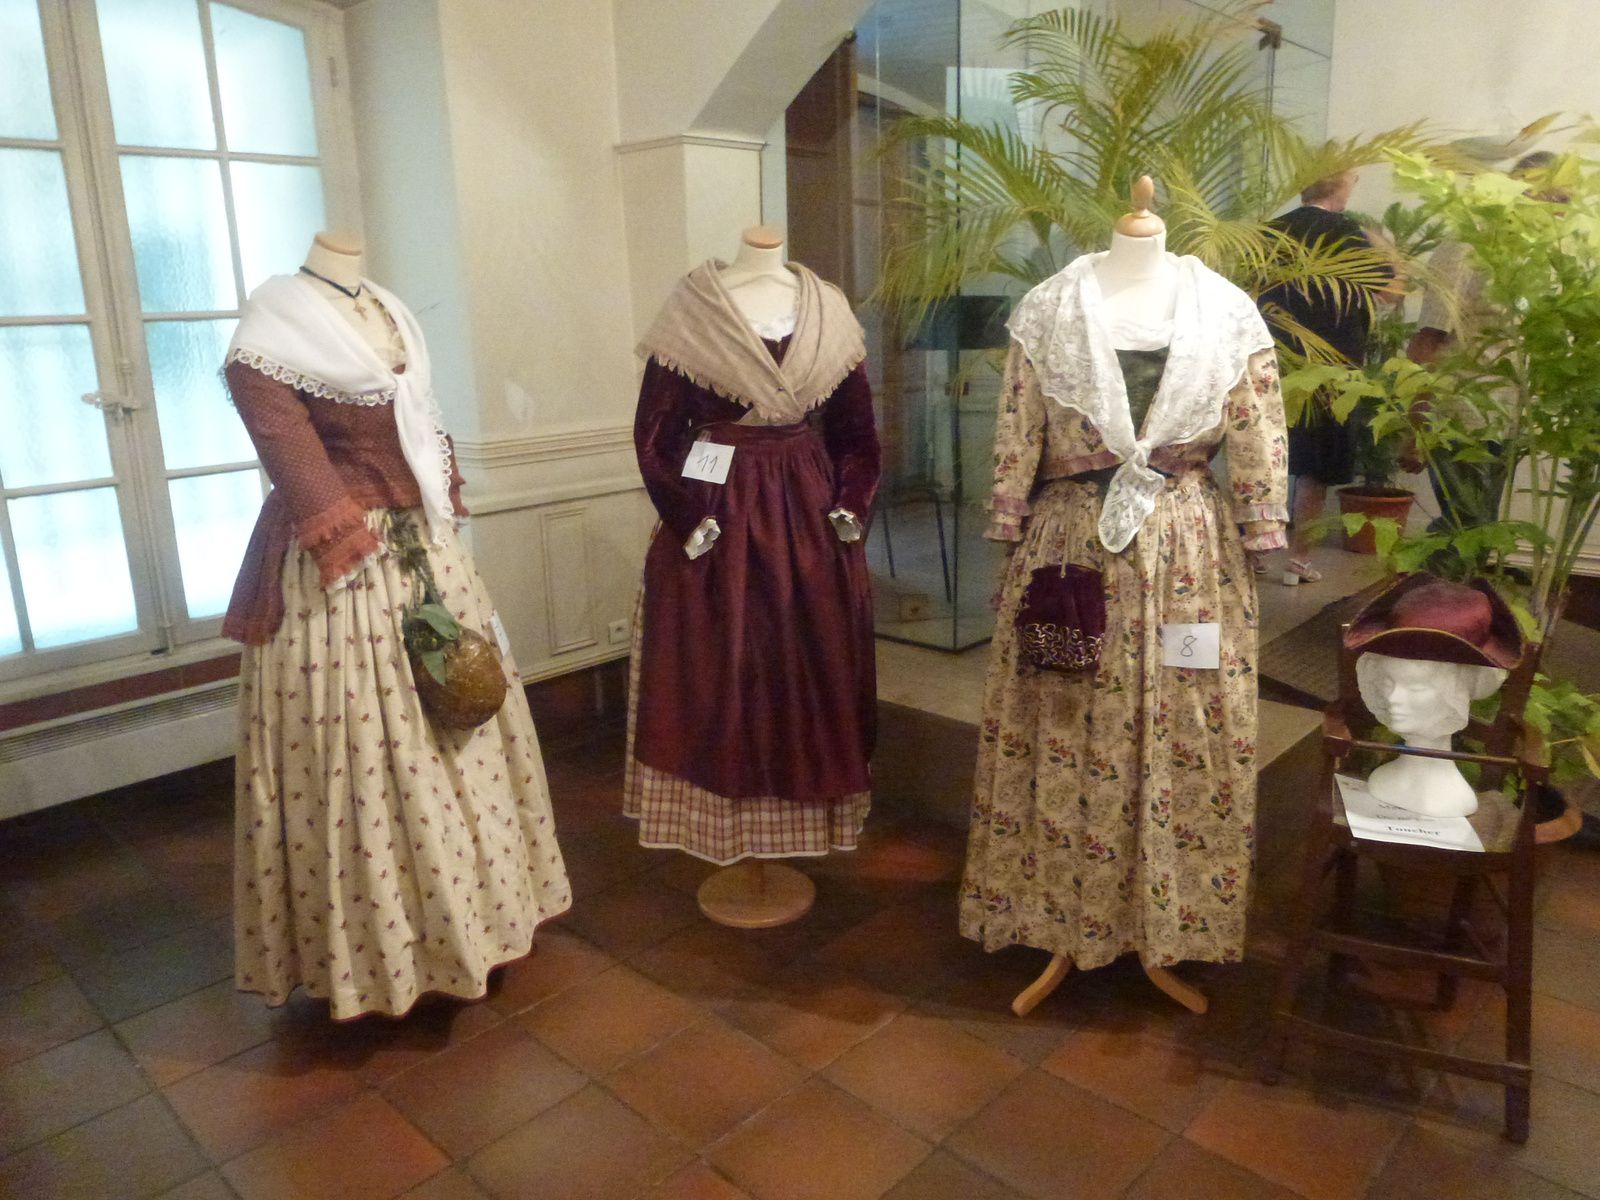 Notre exposition de costumes provençaux à Marignane